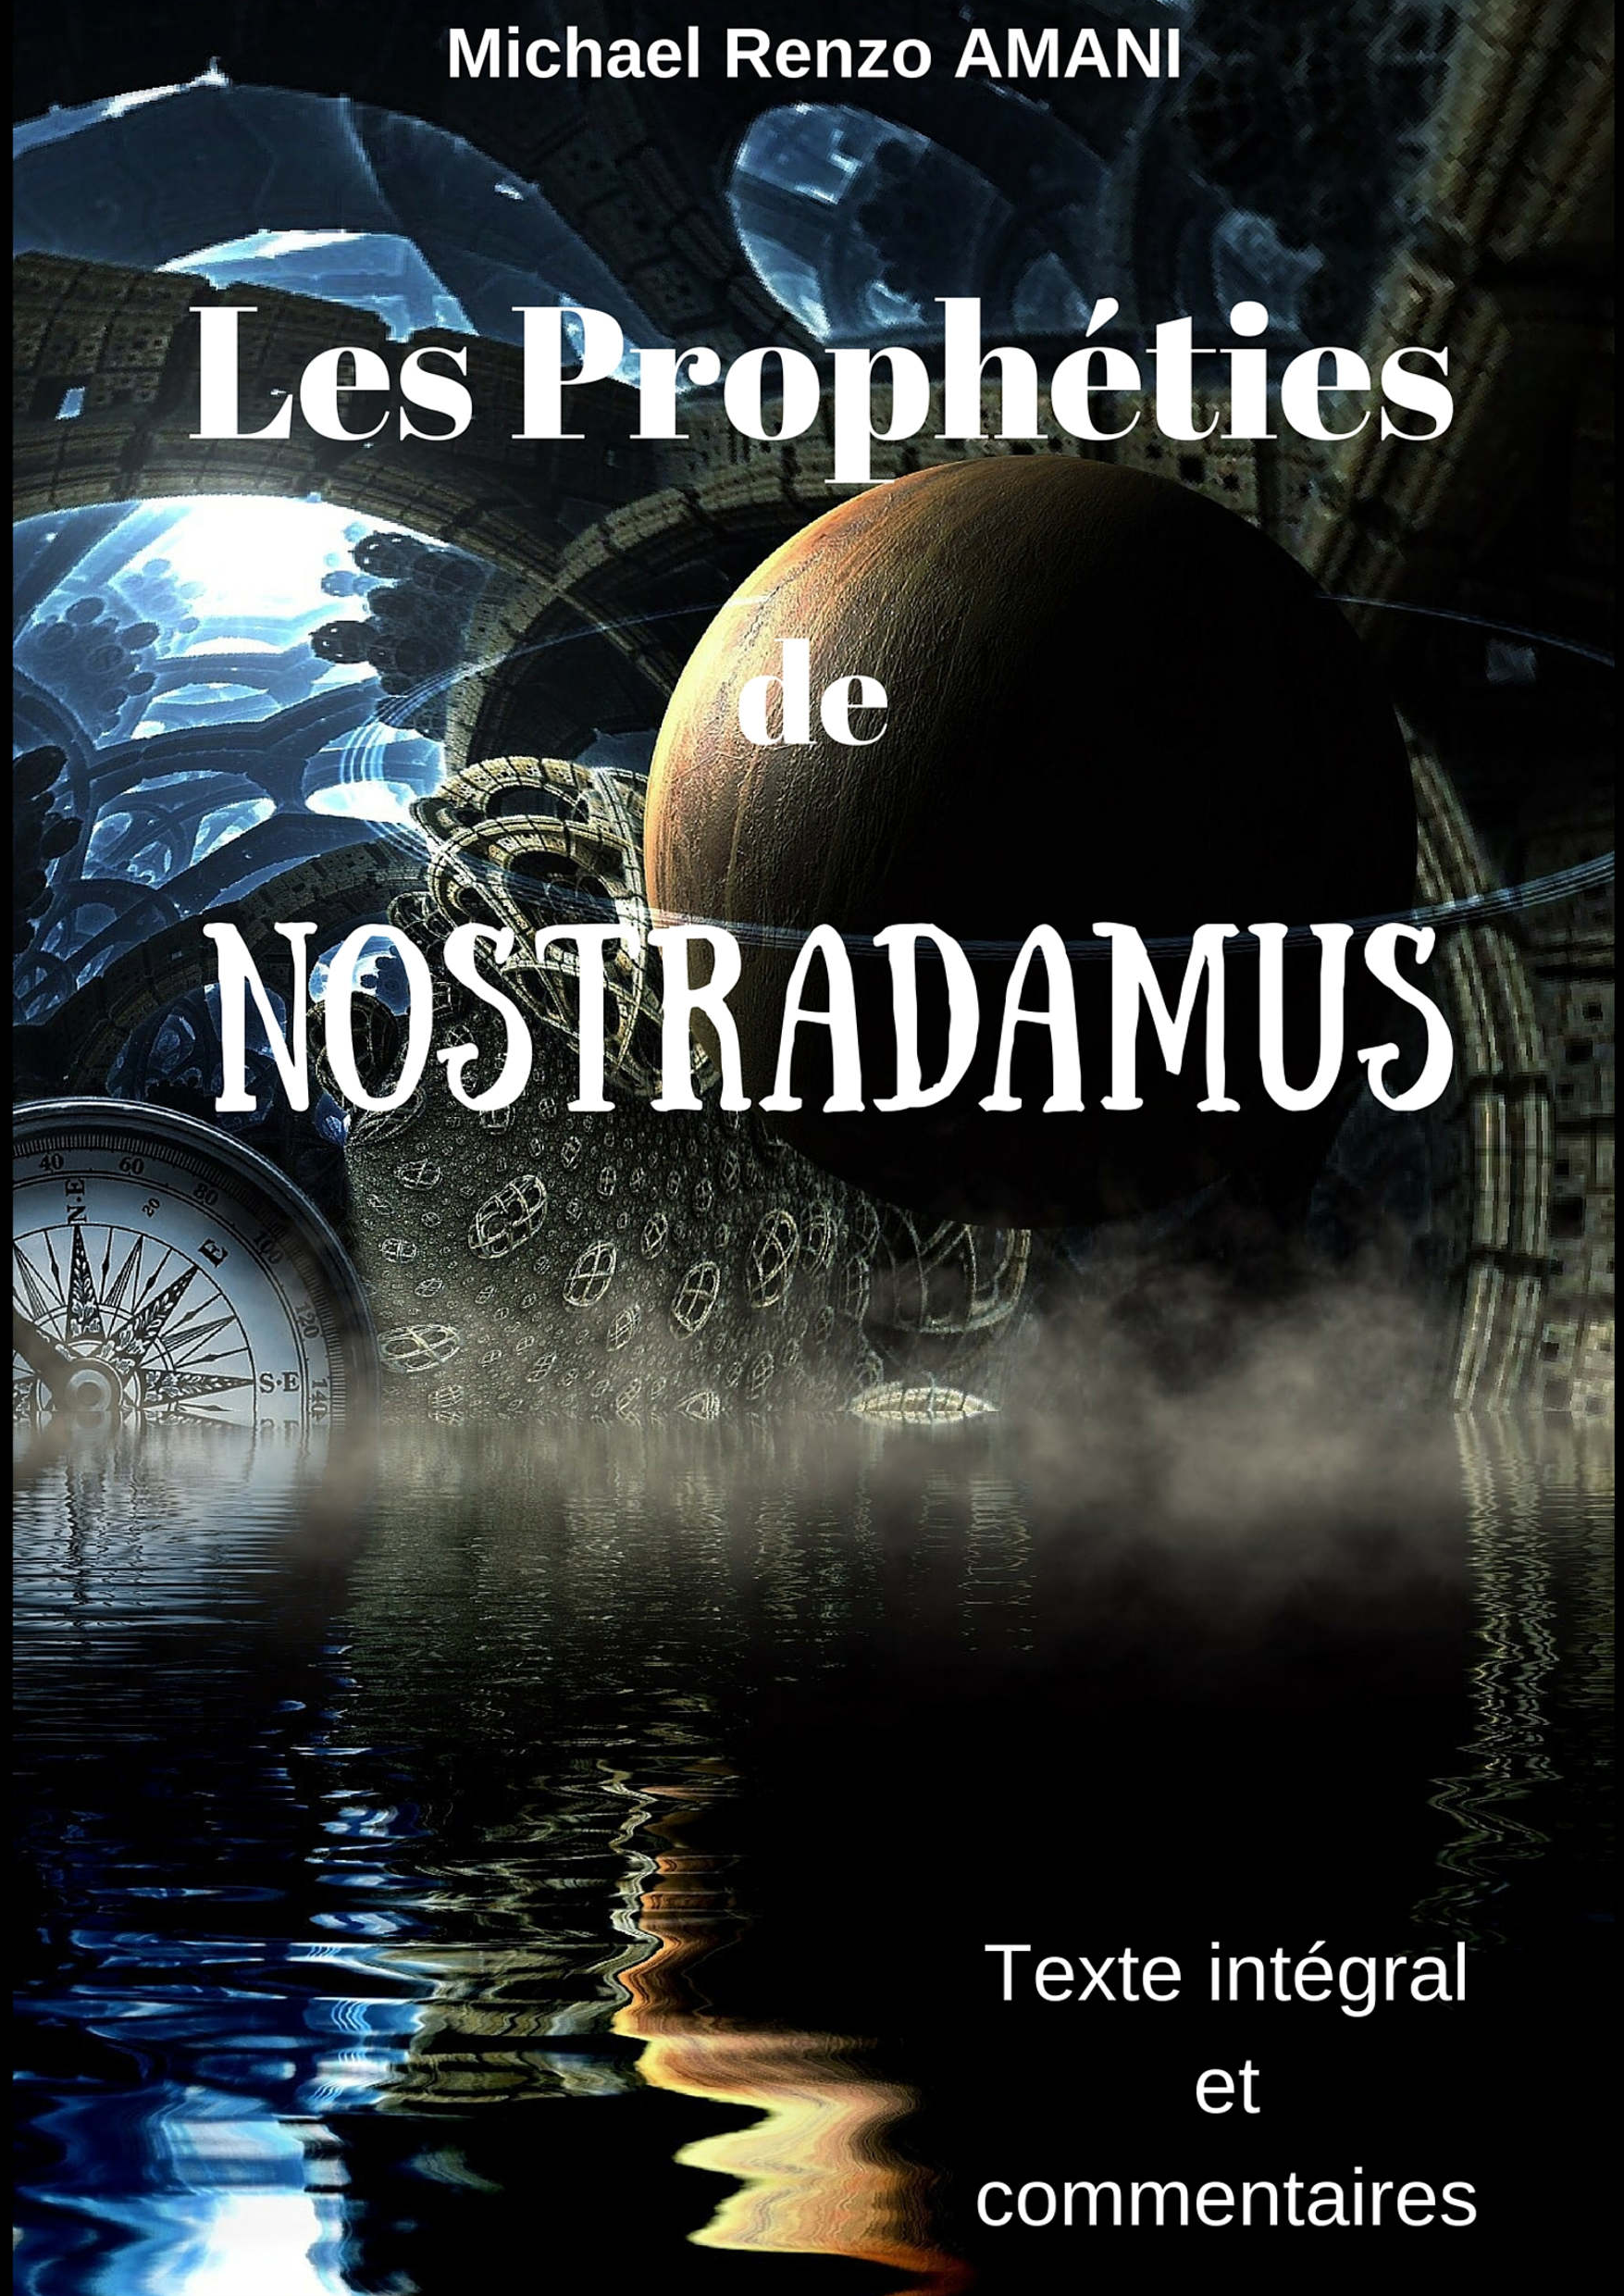 Les prophéties de Nostradamus